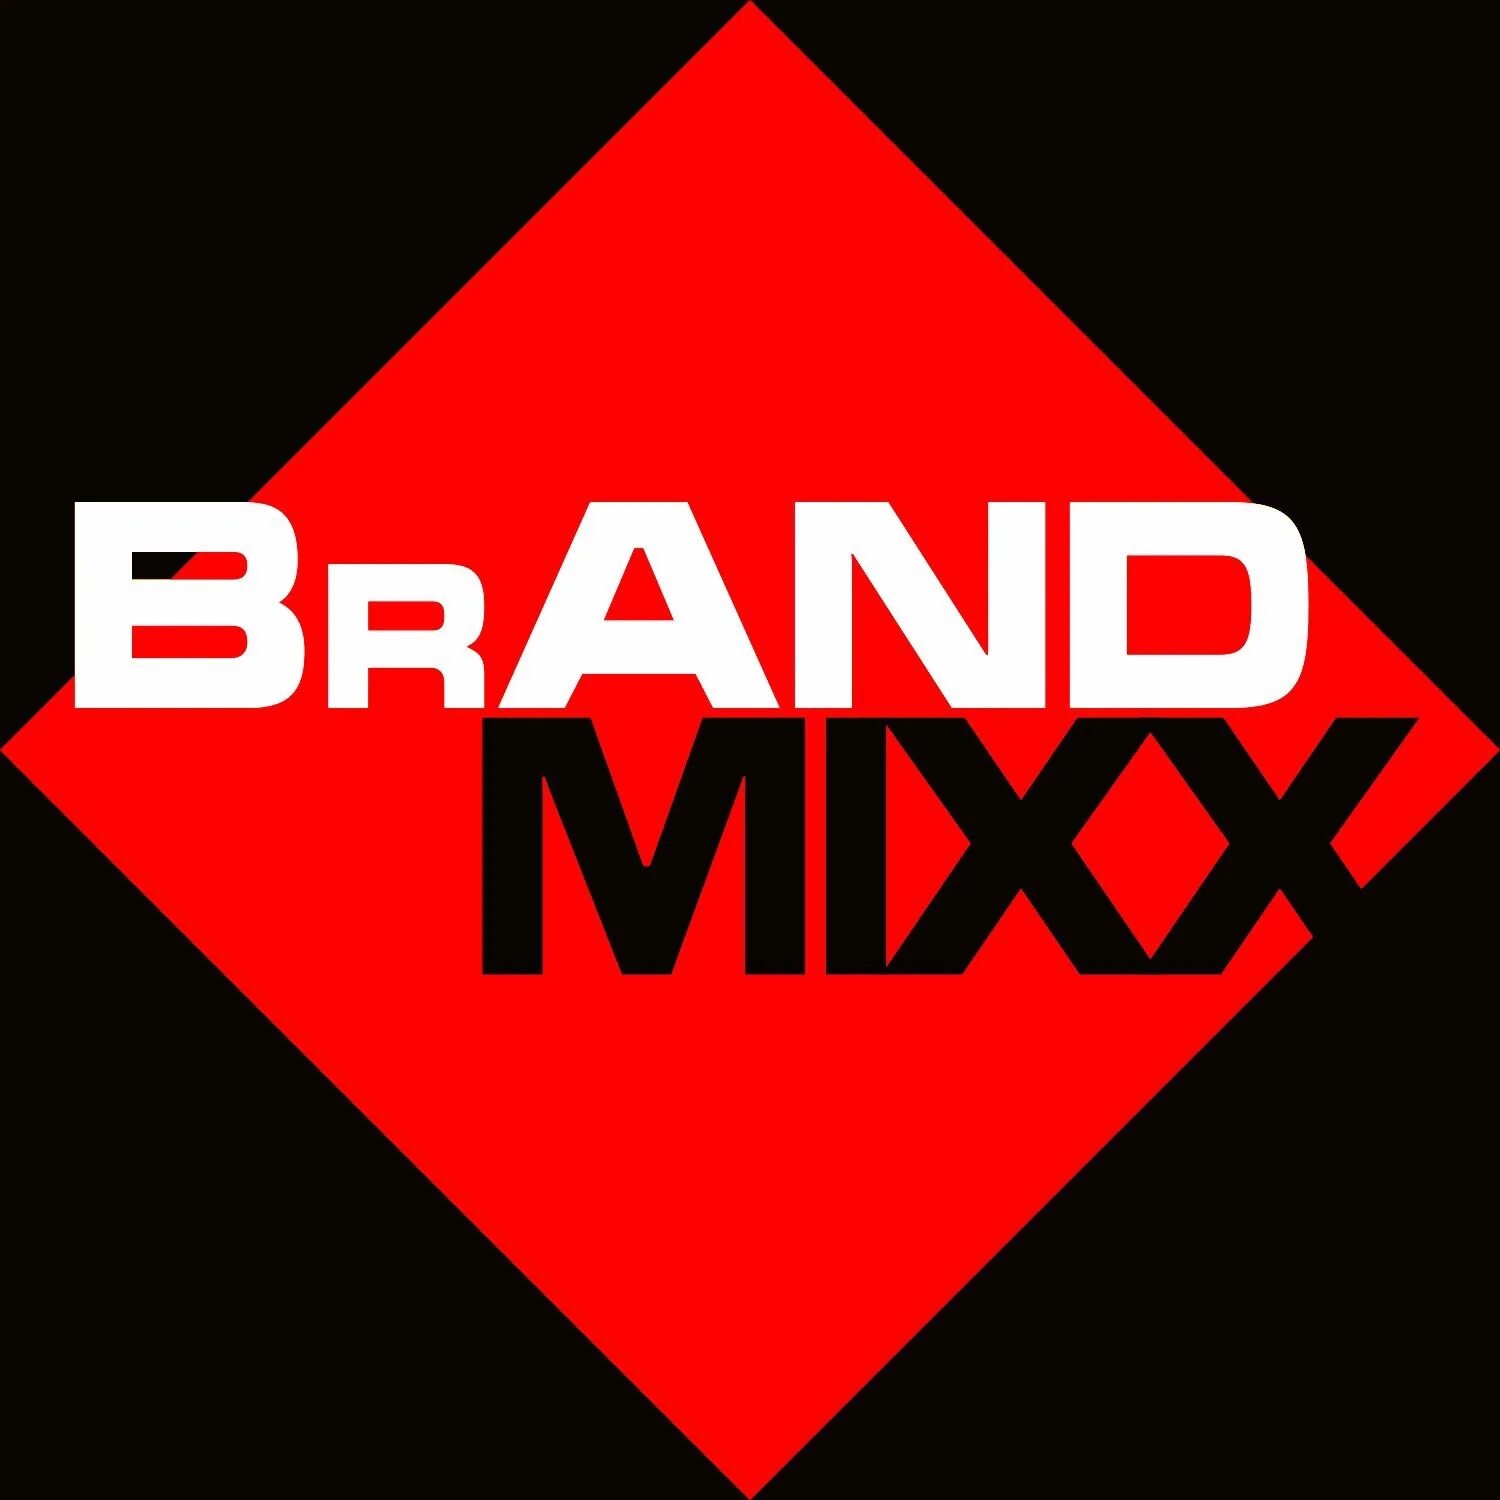 Ооо дос. Brand Mixx. Микс бренд Омск. Brand. Dos Marco бренд.